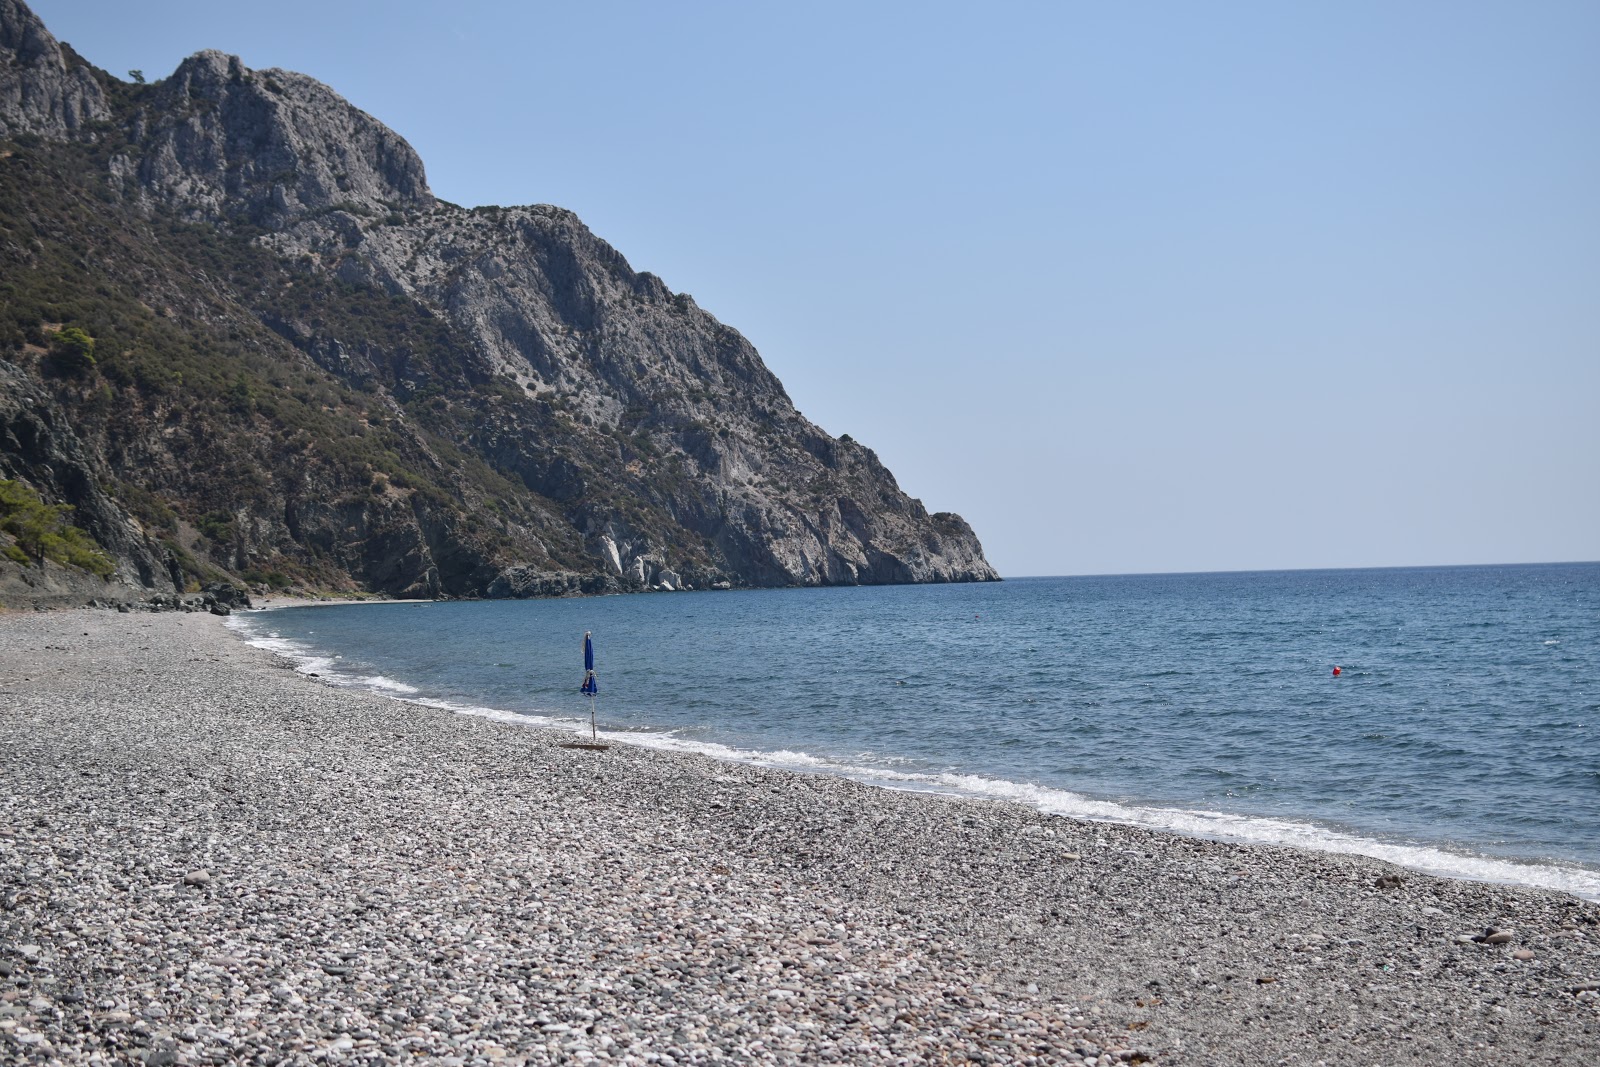 Fotografie cu Drotas beach - locul popular printre cunoscătorii de relaxare